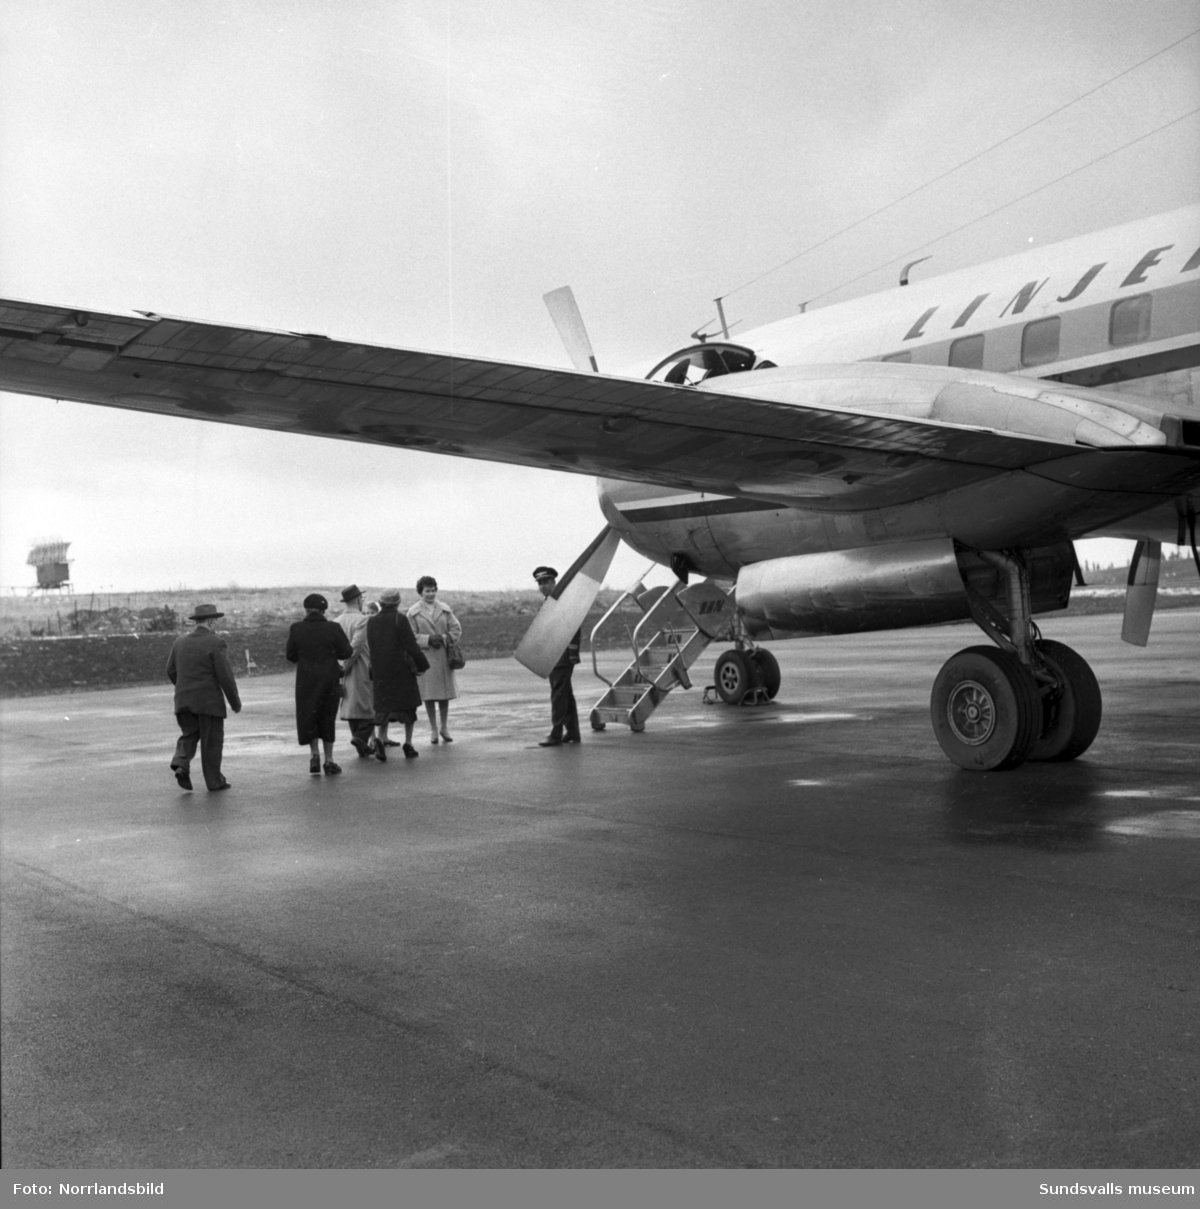 Bildserie som dokumenterar ett sällskap som gör en flygresa från Midlanda till Östersund.